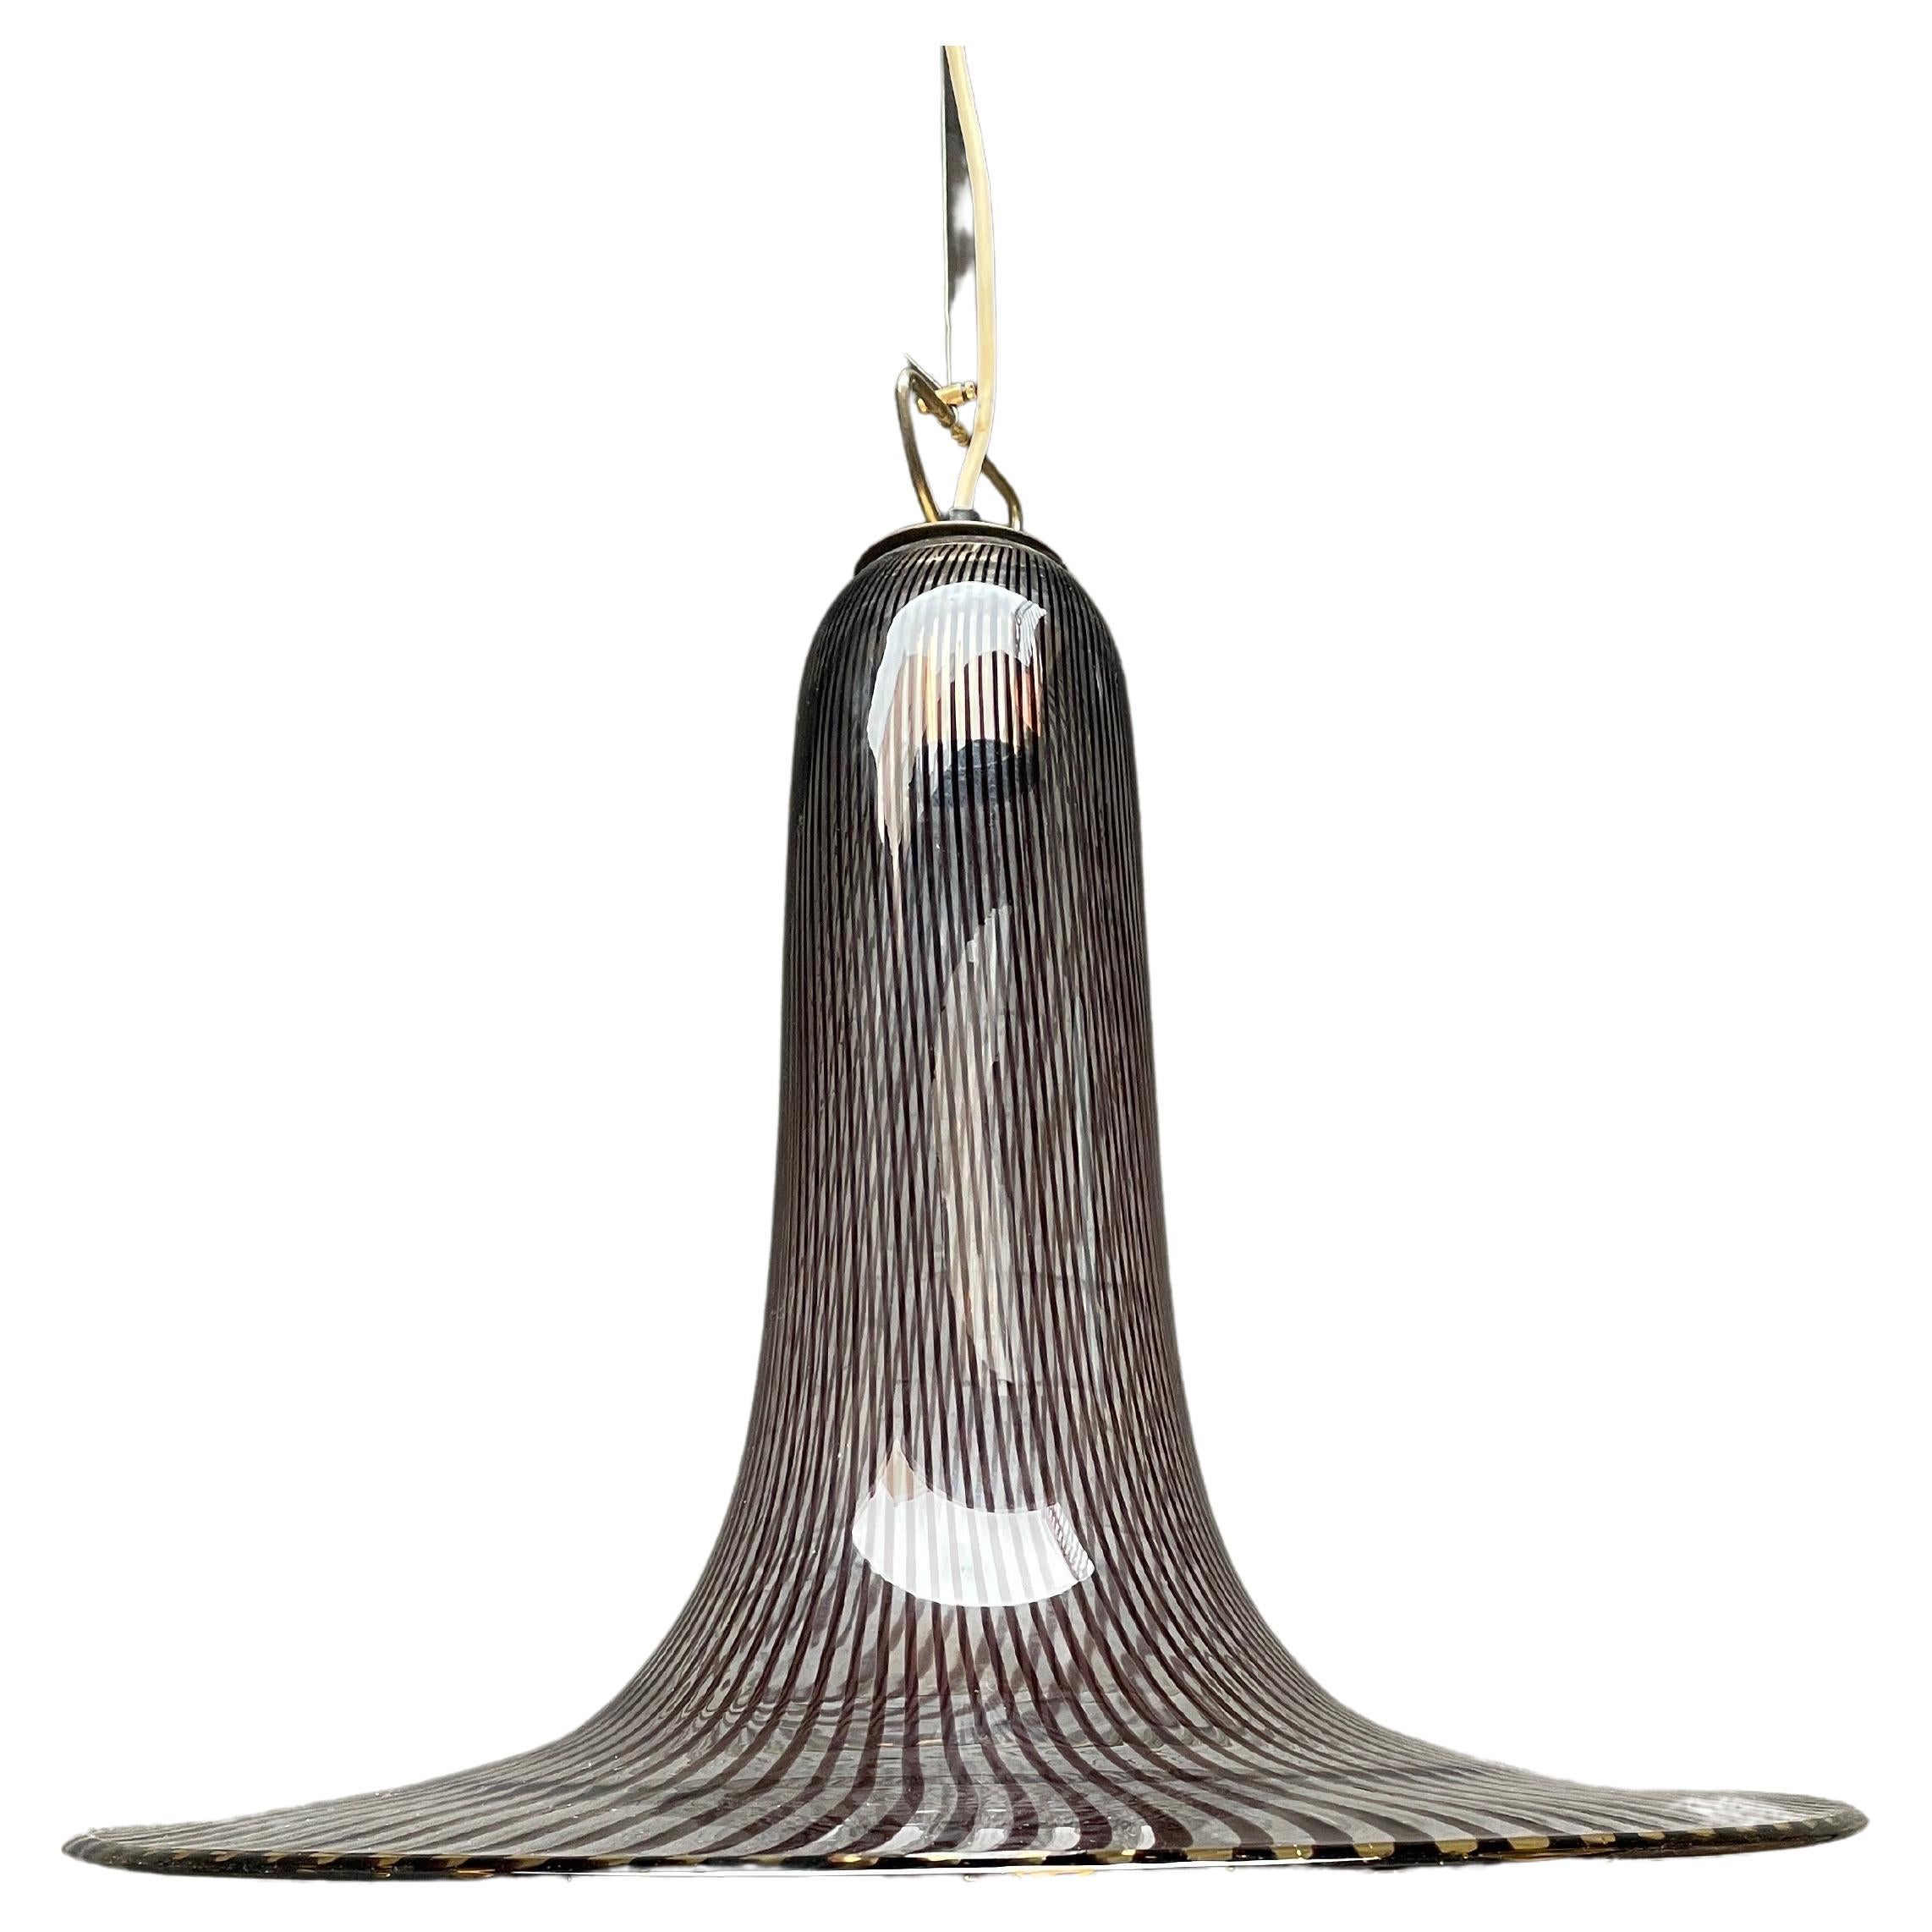 Grand pendentif de Murano en forme de trompette, en cristal clair et violet rayé, avec des accents en laiton. La chute peut être modifiée par la tige en fil de fer. Conçu par Lino Tagliapietra pour Venini.

Peut être recâblé pour n'importe quel code